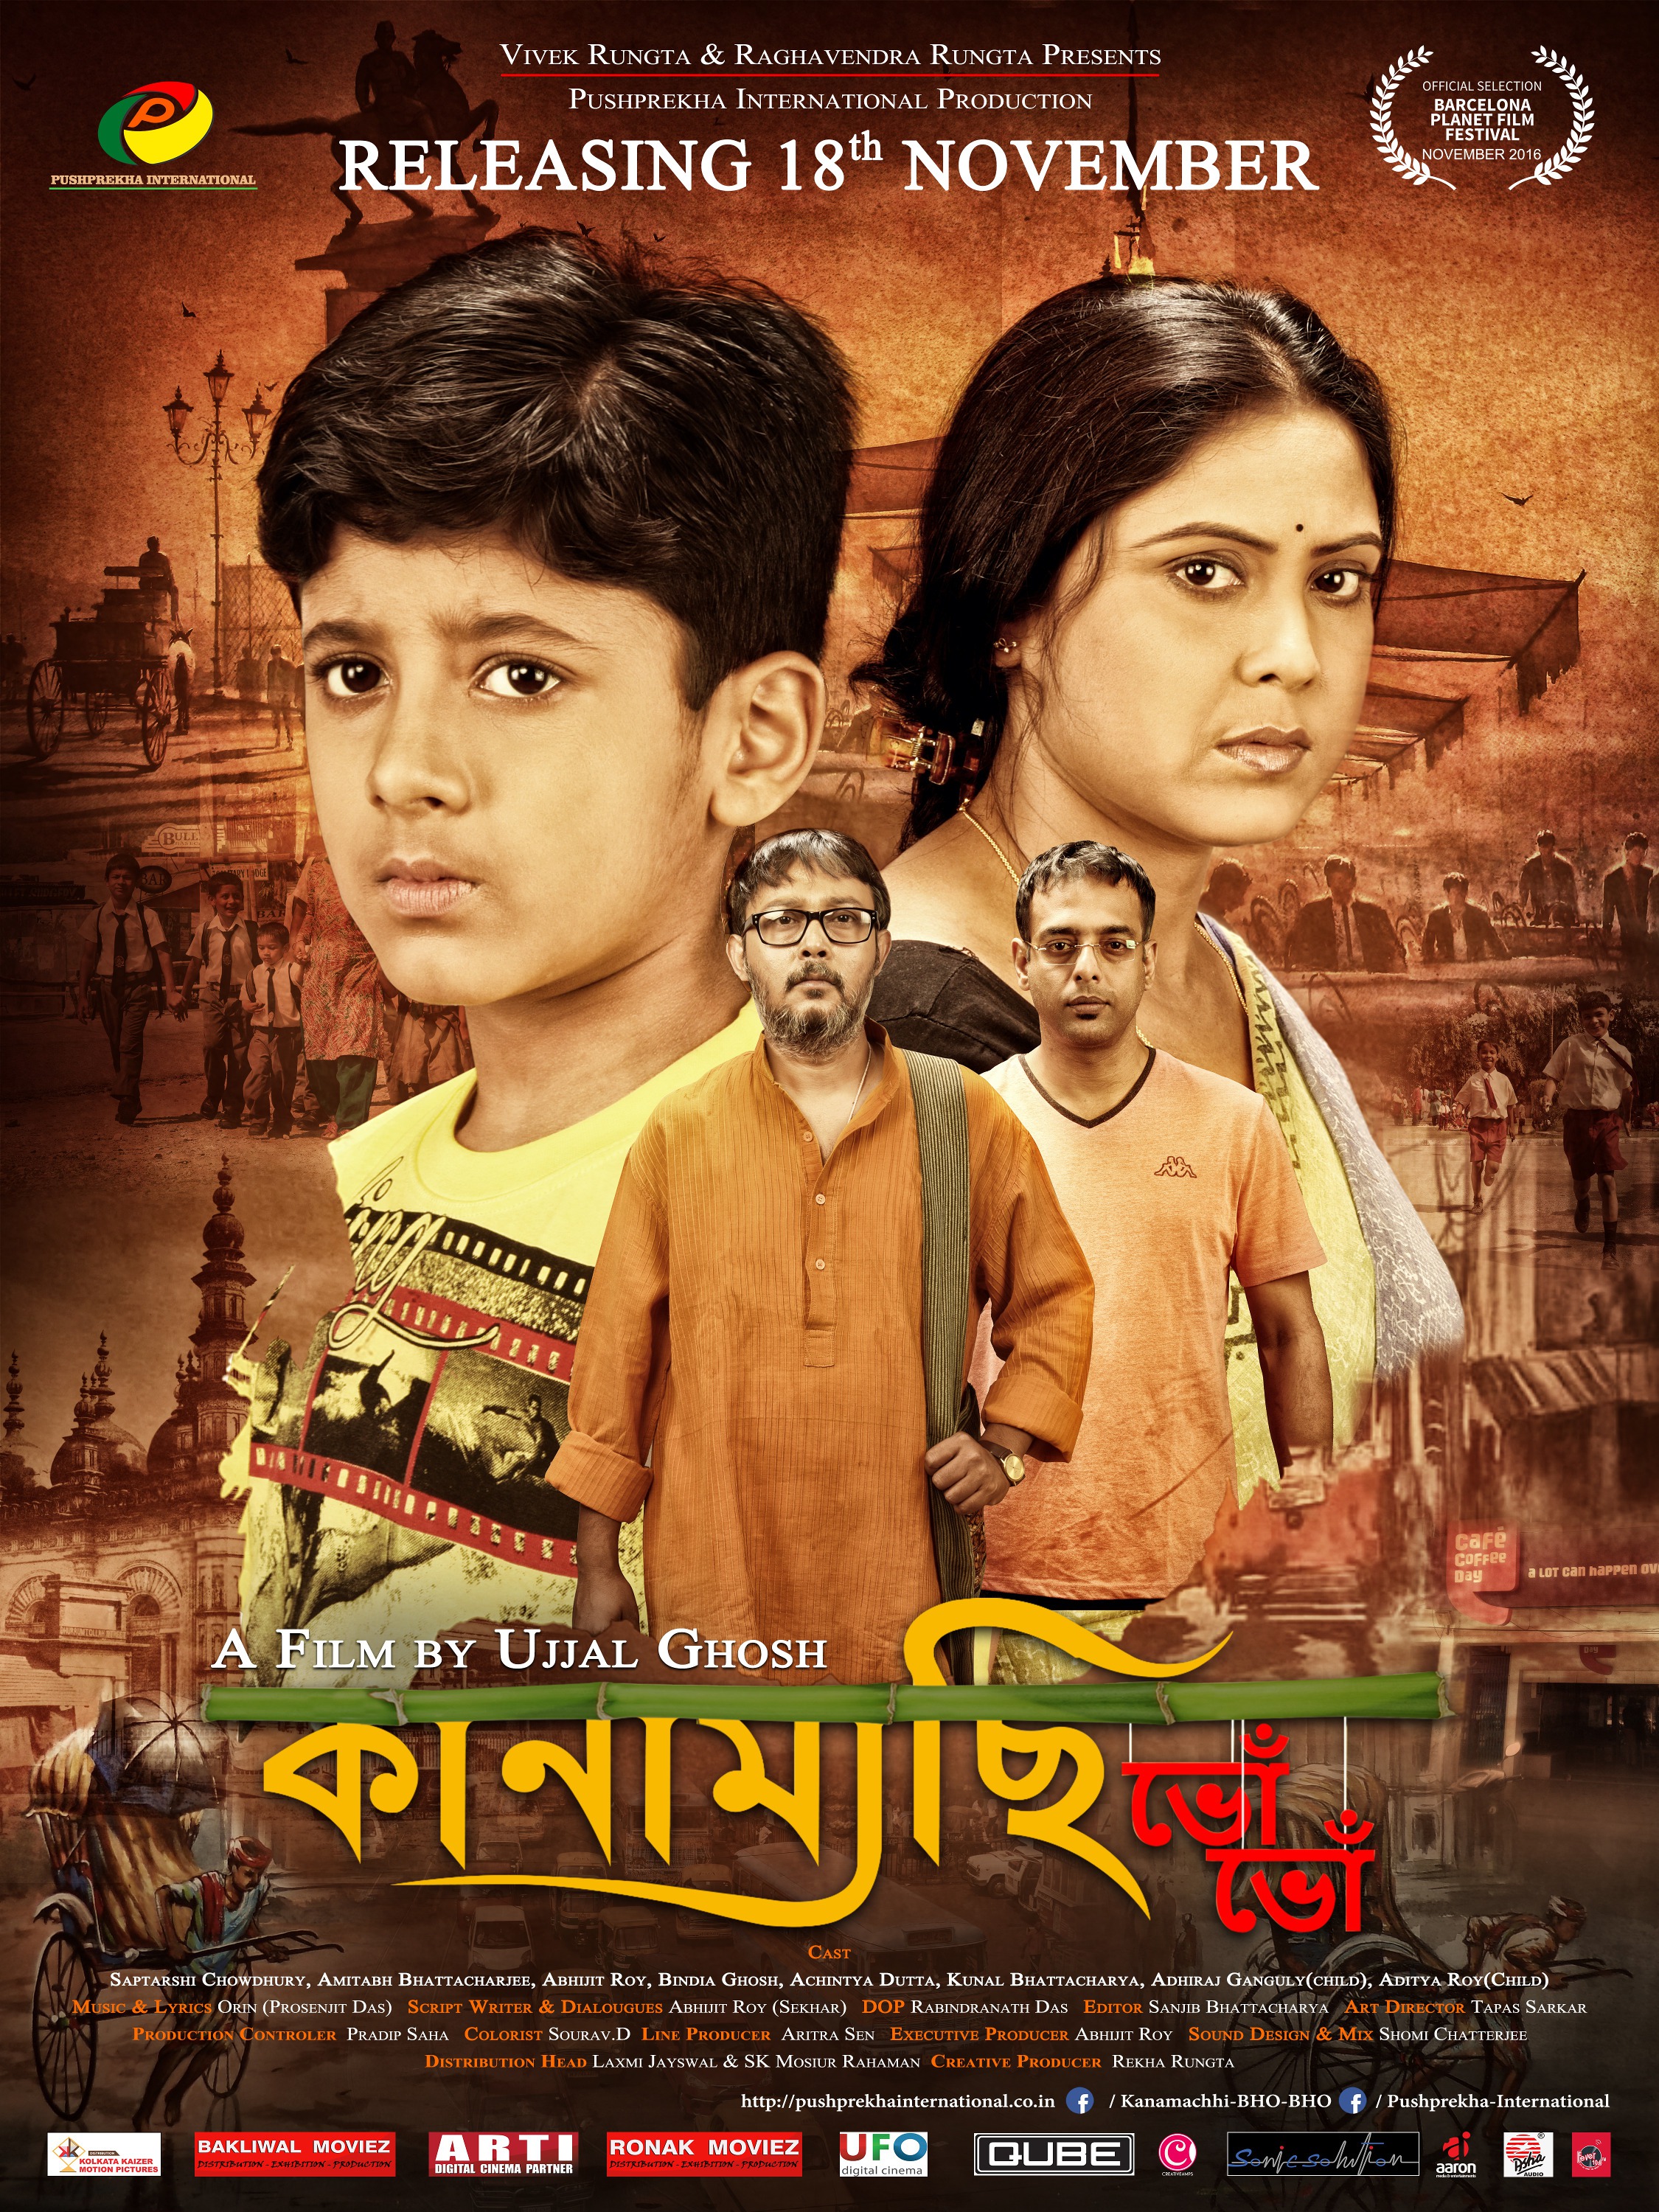 Mega Sized Movie Poster Image for Kanamachhi Bho Bho (#1 of 2)